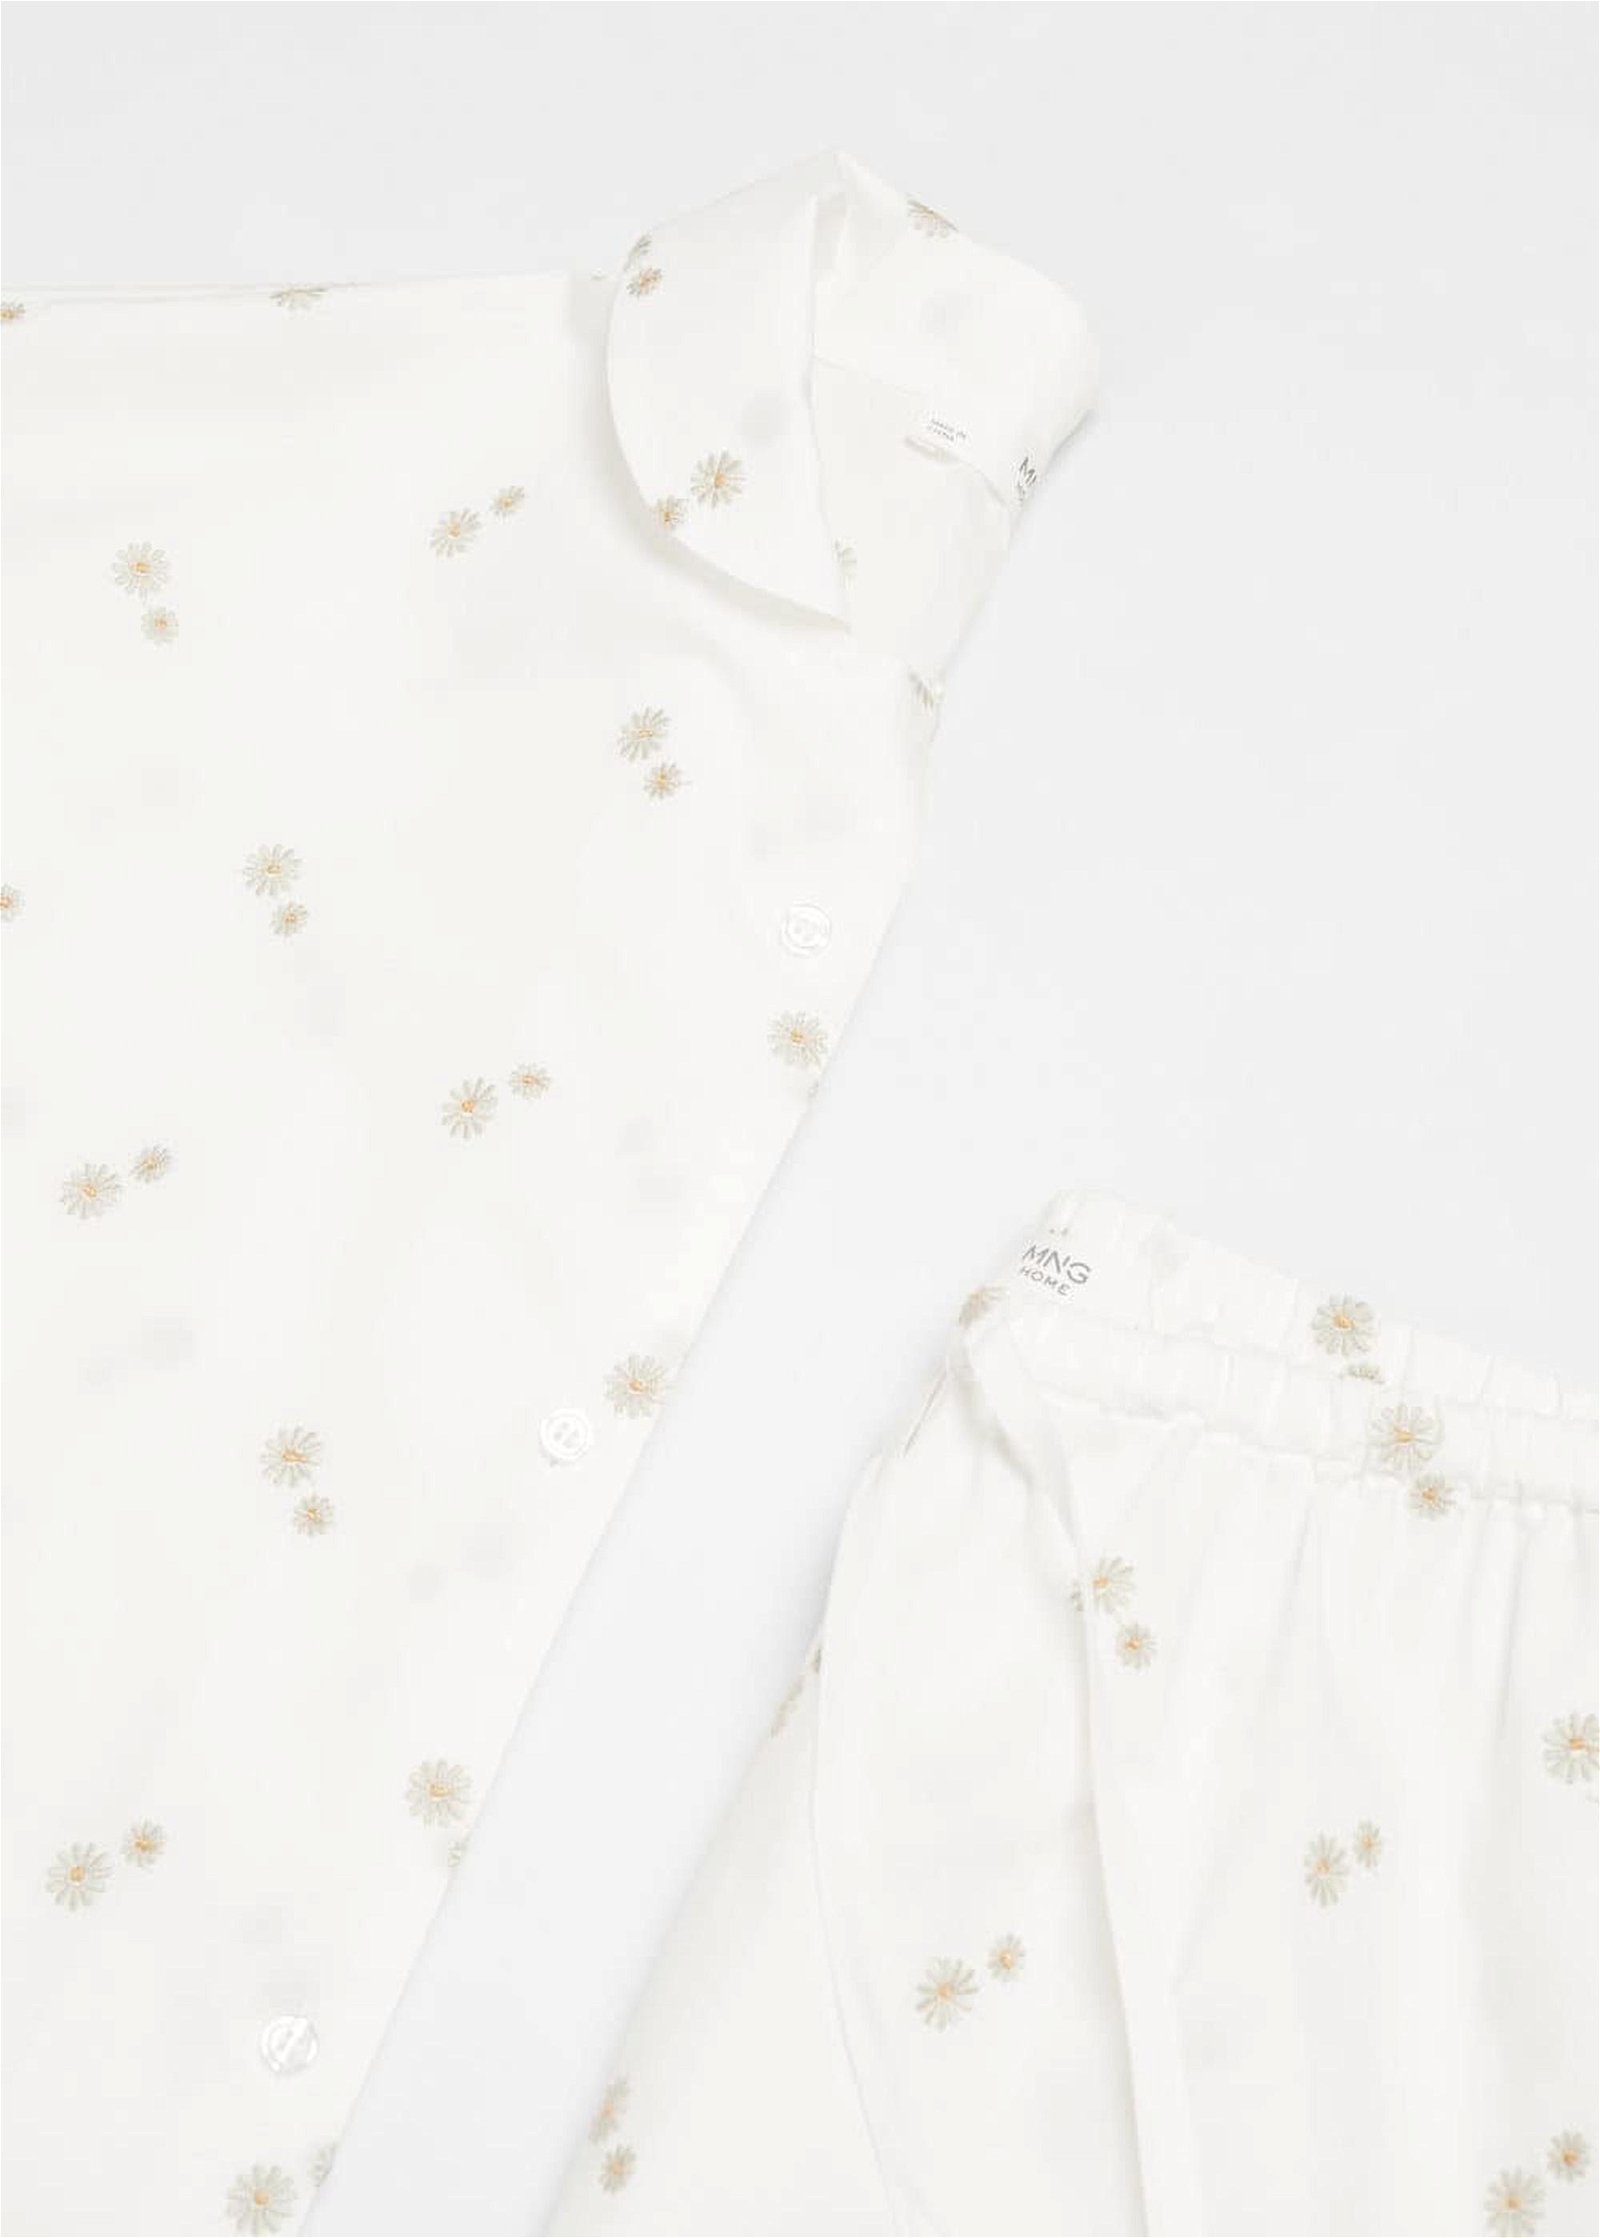 Mango Kadın Çiçek Işlemeli Pamuklu Pijama Pantolonu Kırık Beyaz